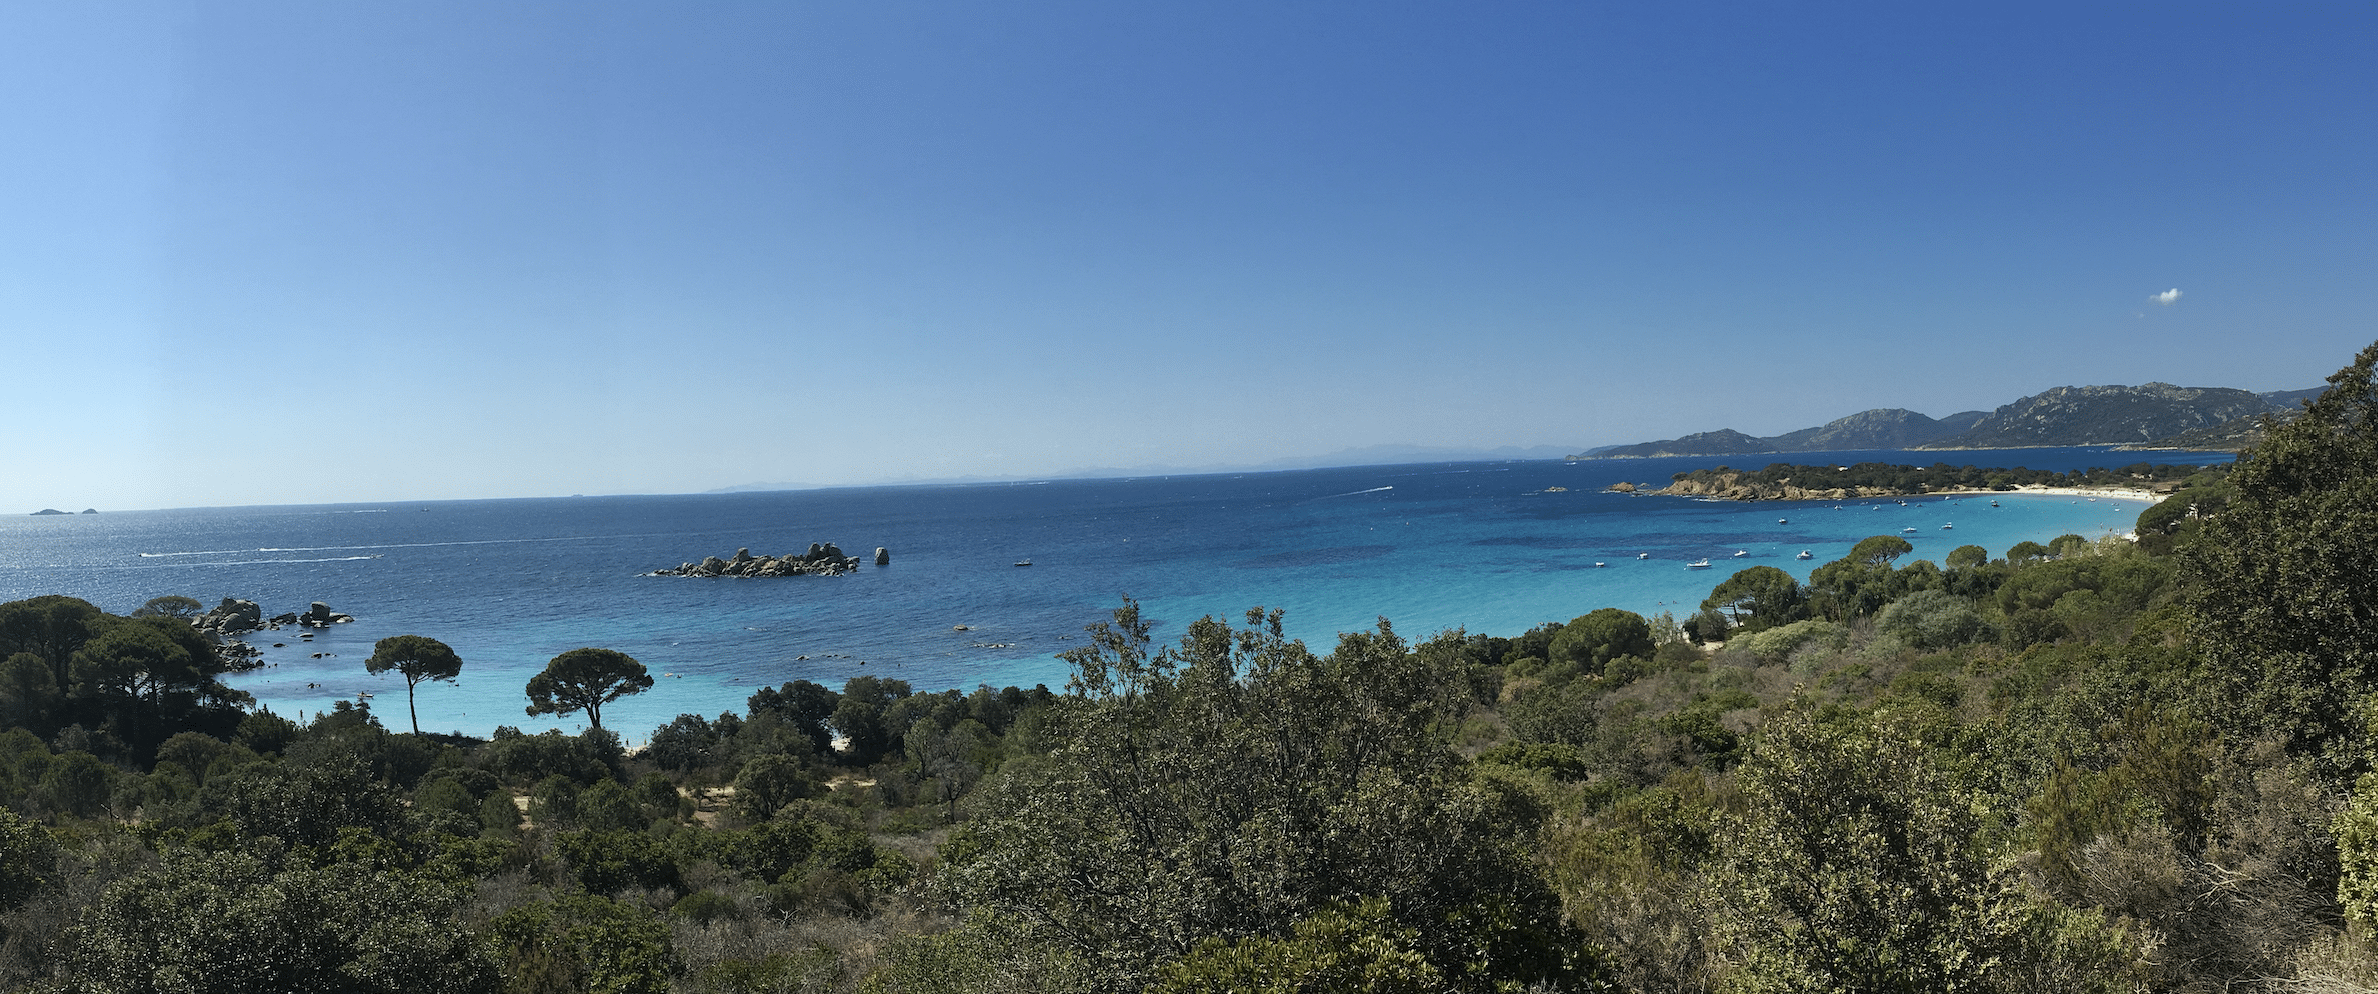 vue sur la plage de tamaricciu